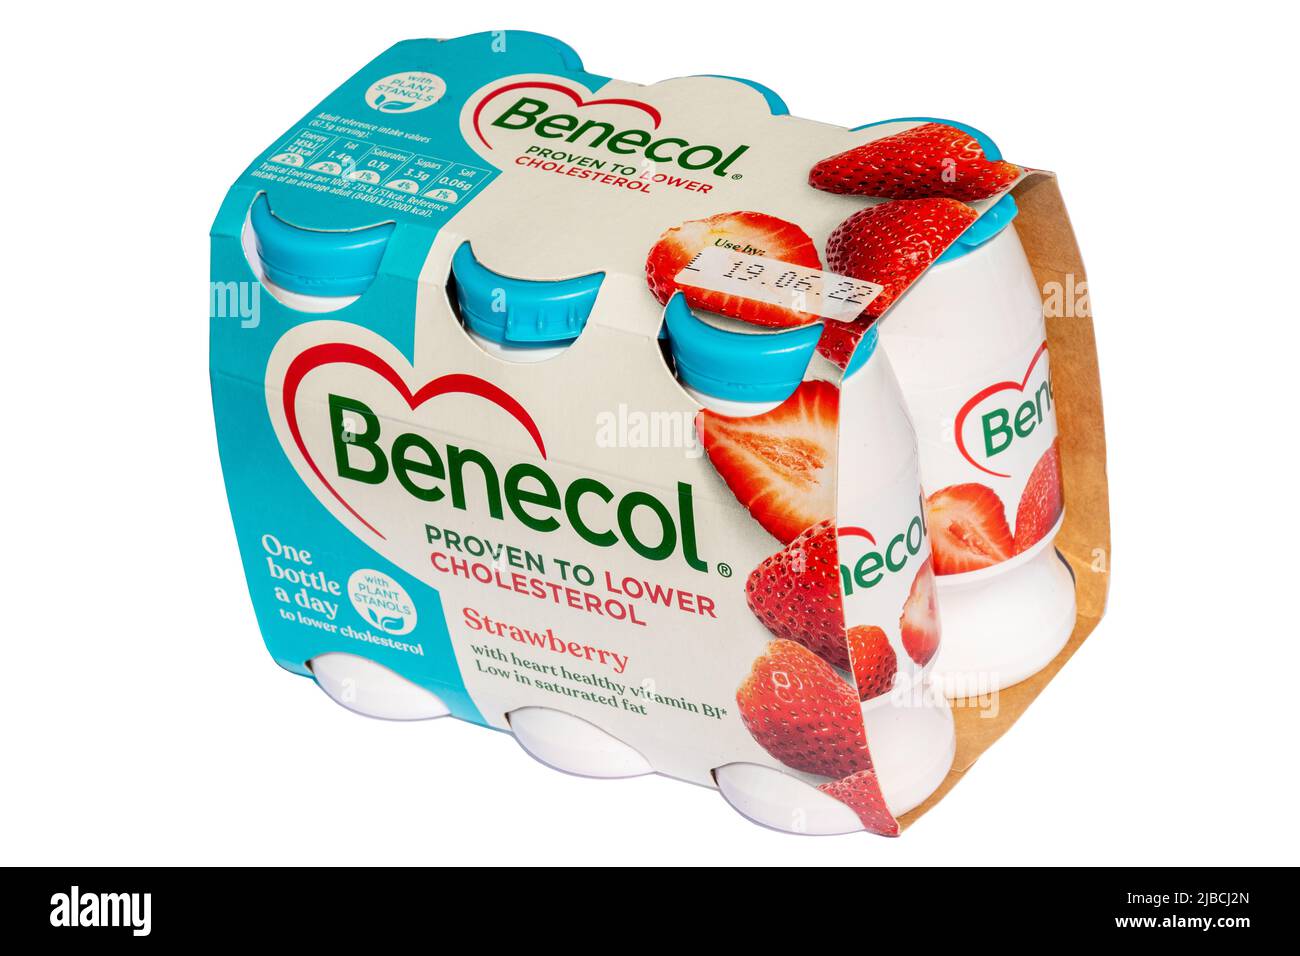 Benecol Joghurt Getränke Erdbeergeschmack, mit Pflanzenstanolen nachweislich Cholesterin senken, Herz gesunde Lebensmittel, Großbritannien Stockfoto